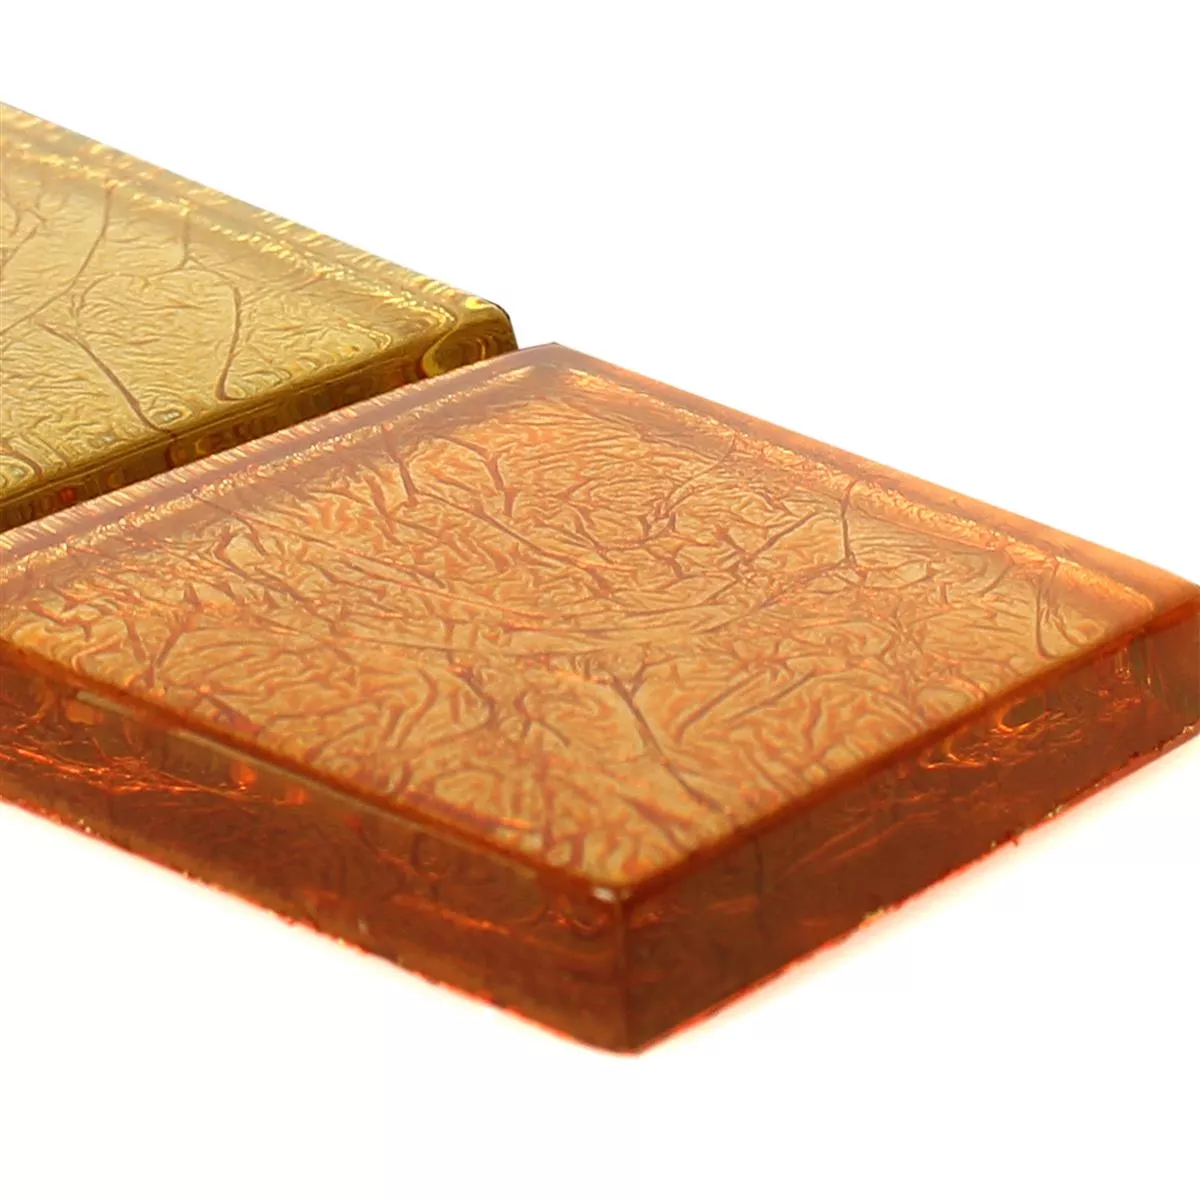 Mozaiki Szklana Płytki Listwa SantaFe Złoto Pomarańczowy Q48